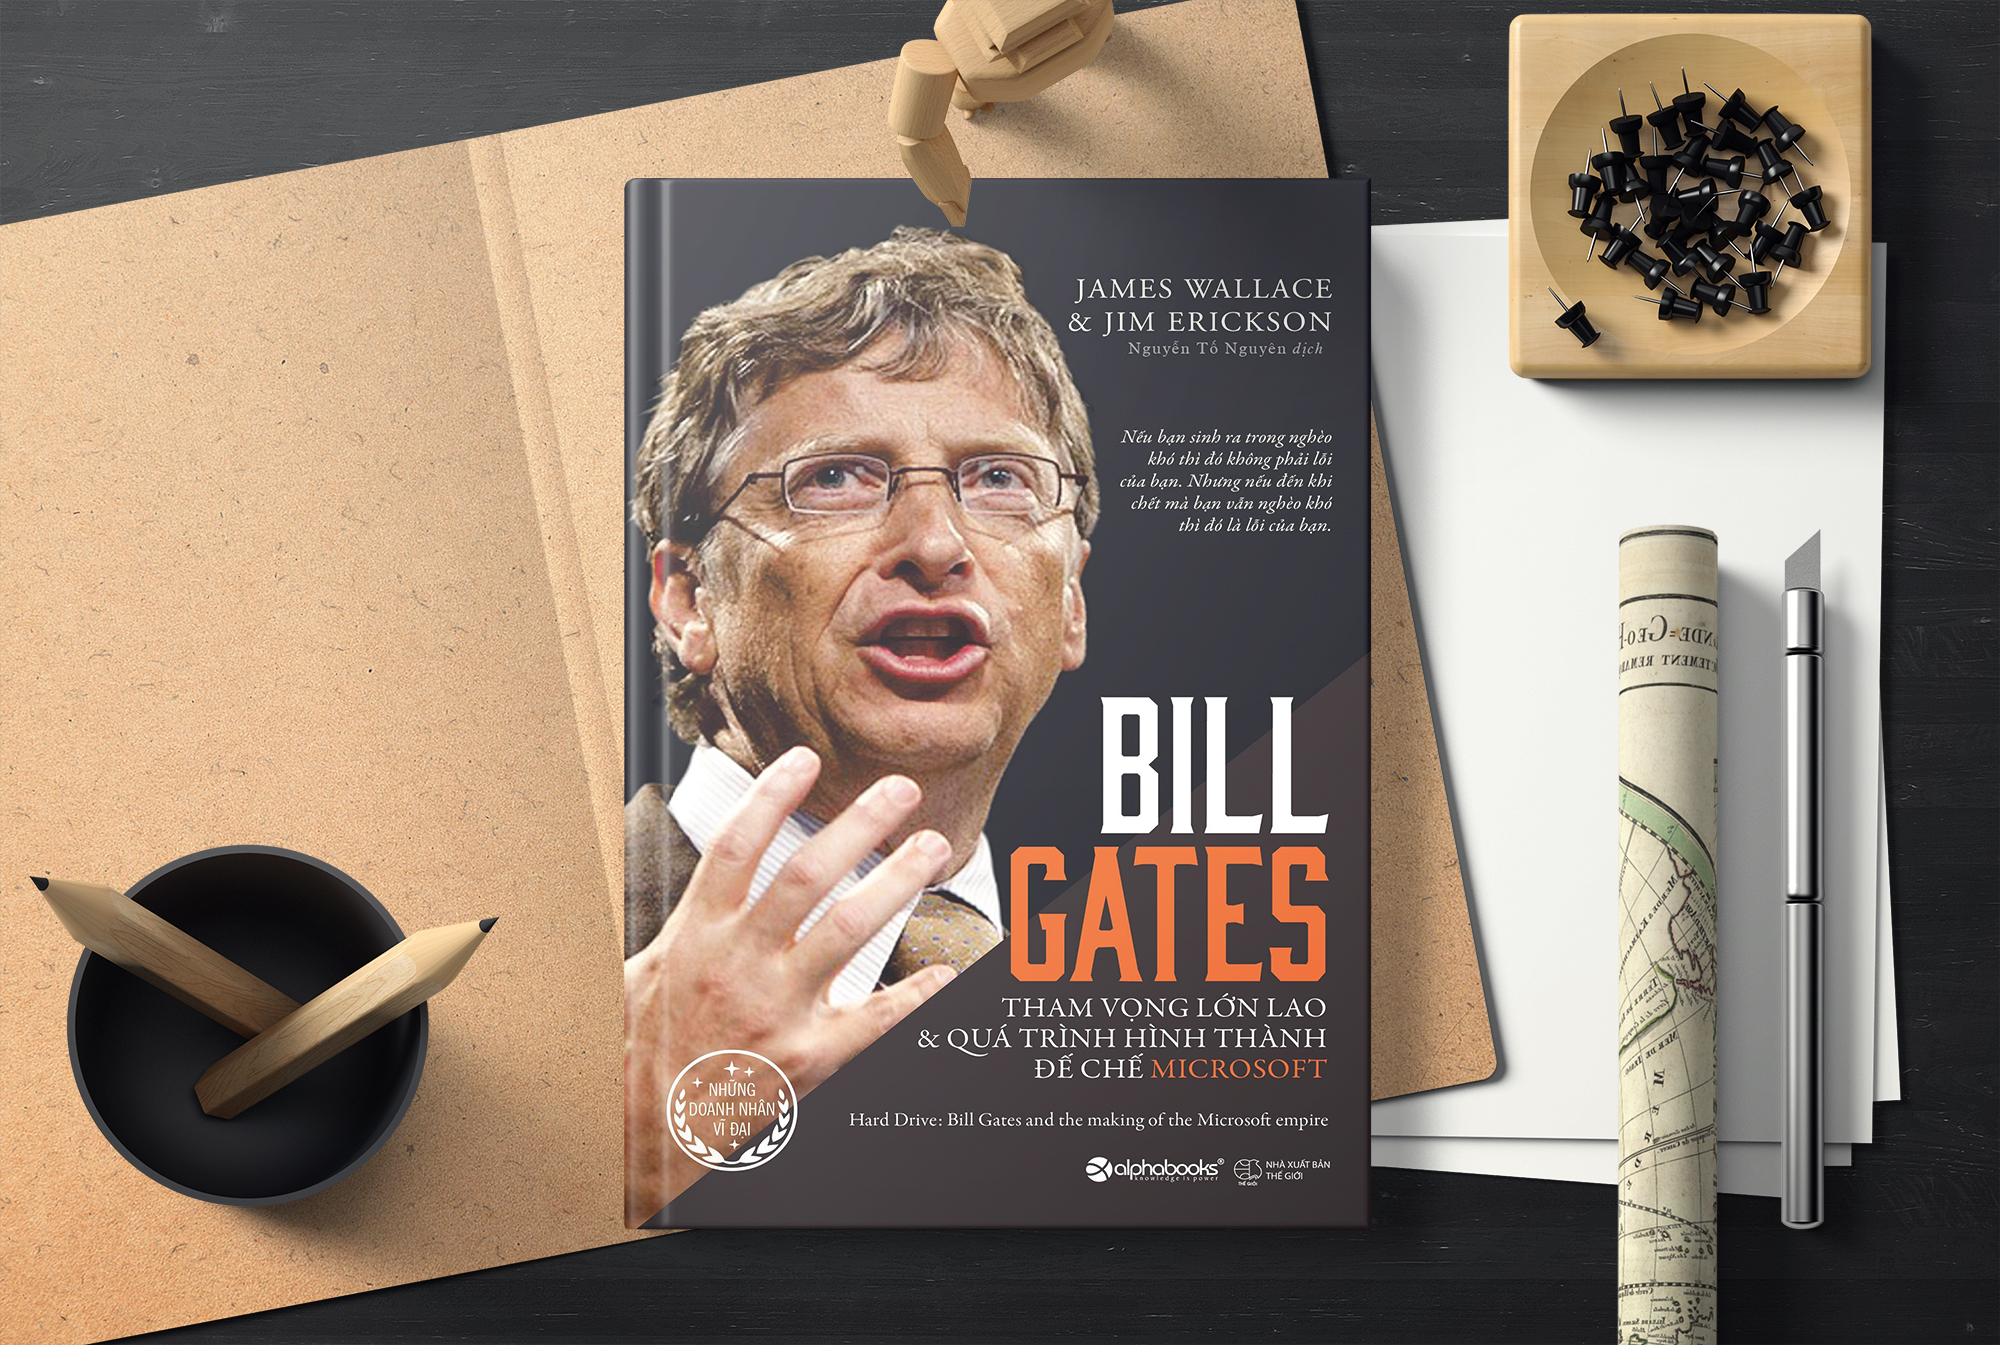 Bill Gates - Tham vọng lớn lao và quá trình hình thành đế chế microsoft#= Hard drive: Bill Gates and the making of the Microsoft empire